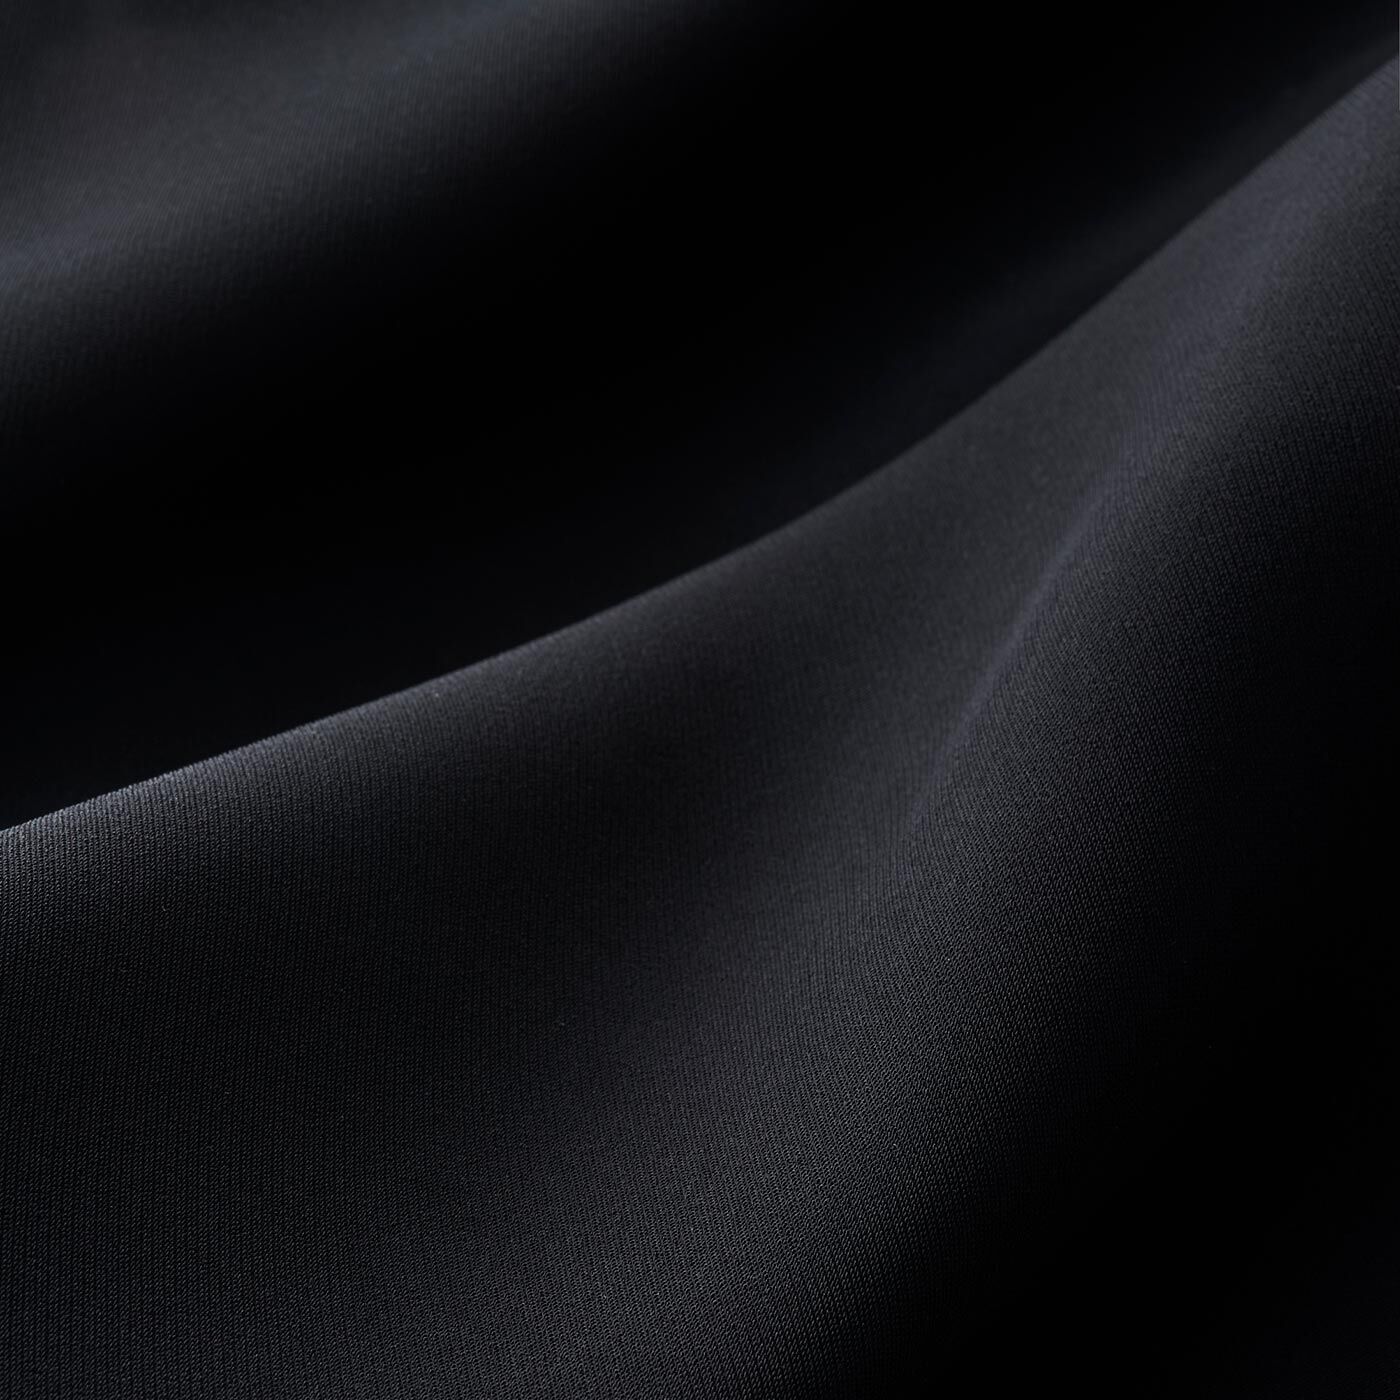 FelissimoLX|LX　ゆれるラインが美しい　ブラックワンピース|光が美しくドレープをみせるようなベルベットのような肌感を持つ素材にこだわりました。[[BR]]